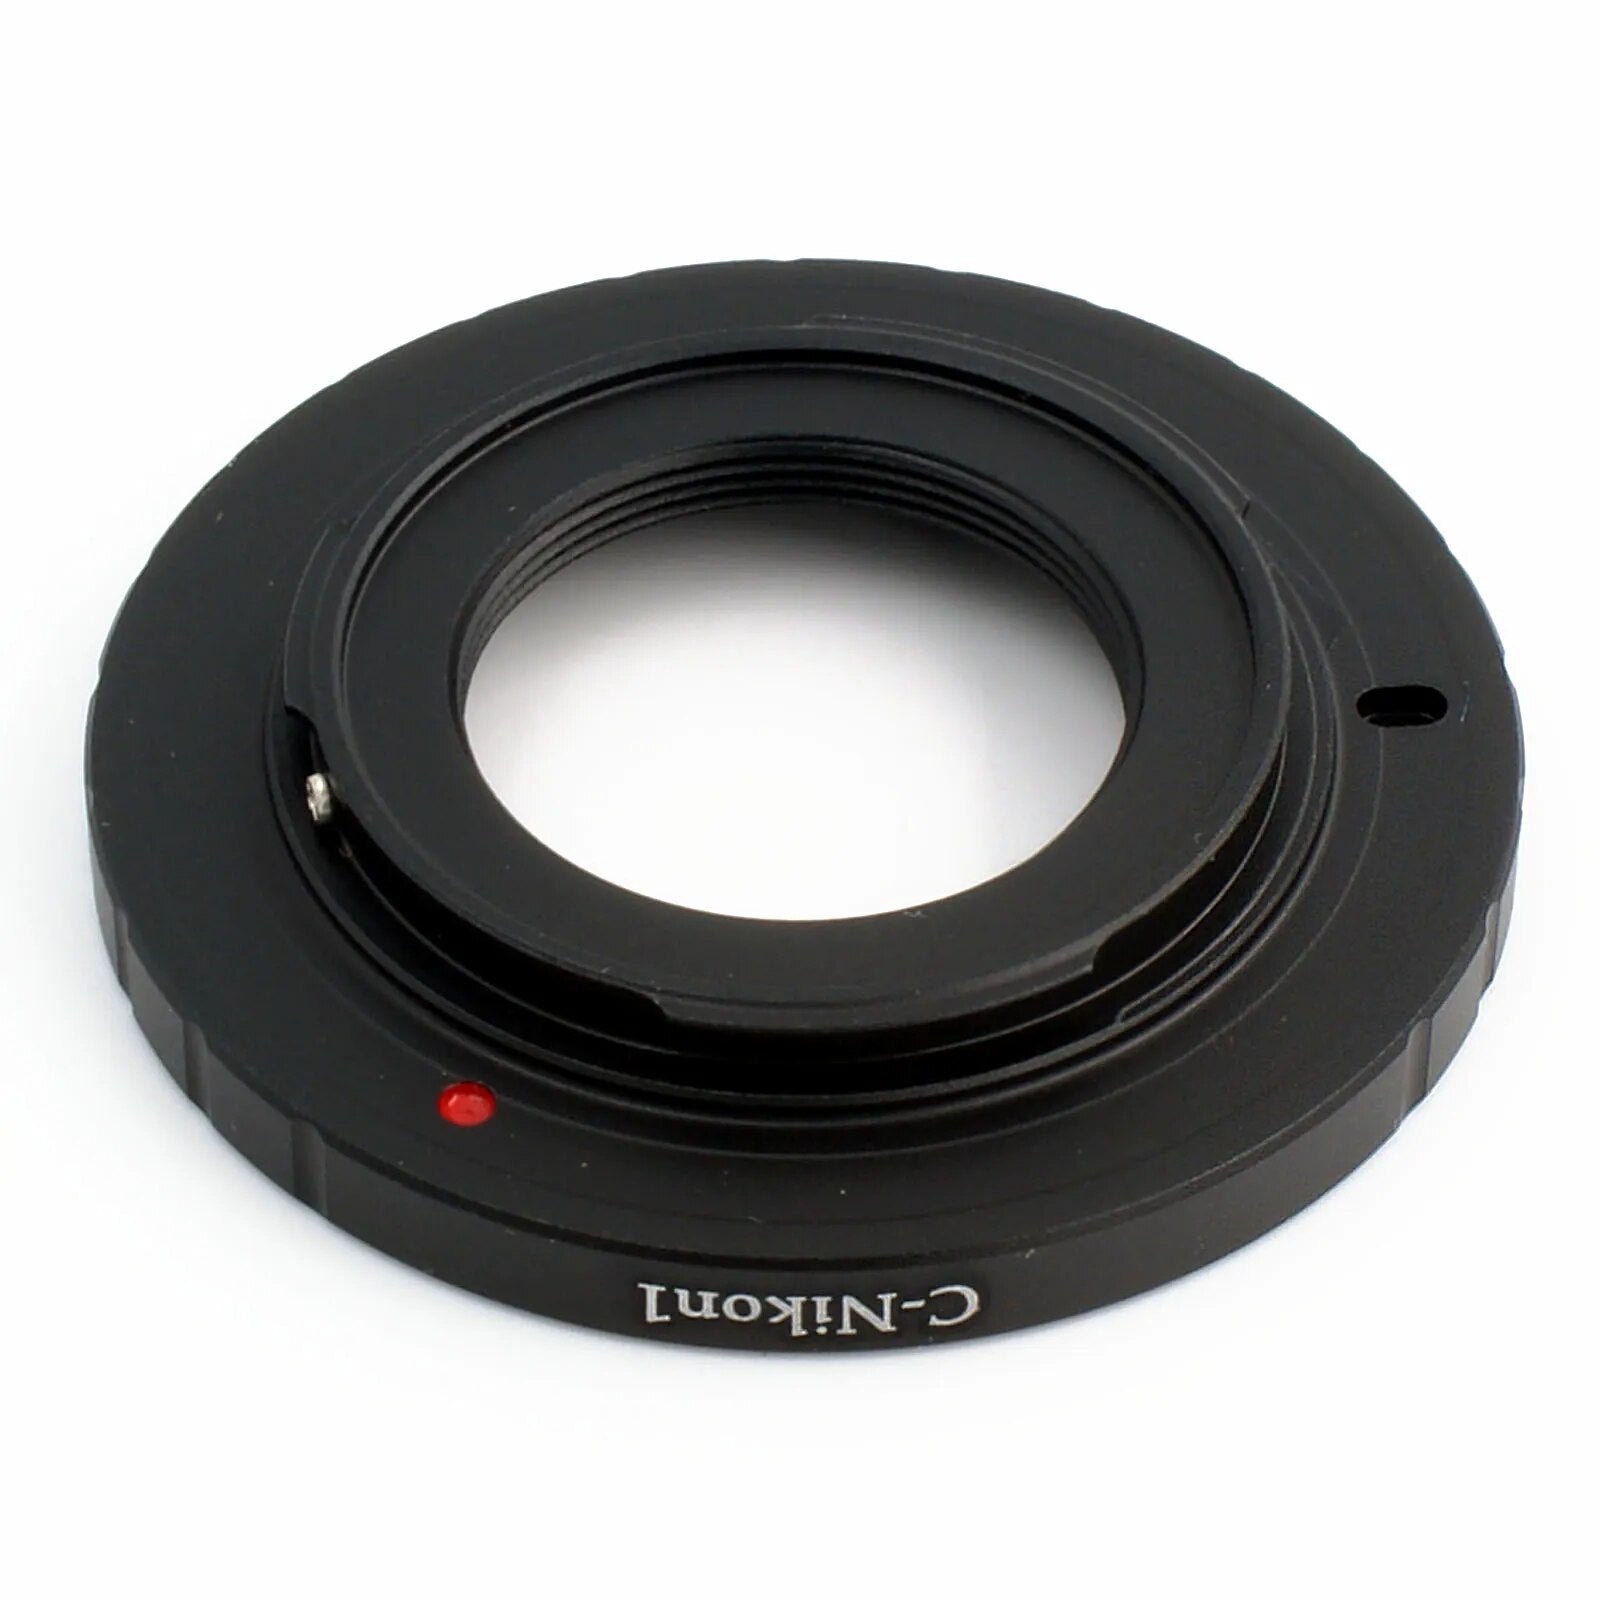 C-N1 Adapter For C Mount Cine Movie lens To Nikon 1 N1 Camera J2 J3 J4 J5 V1 V2 V3